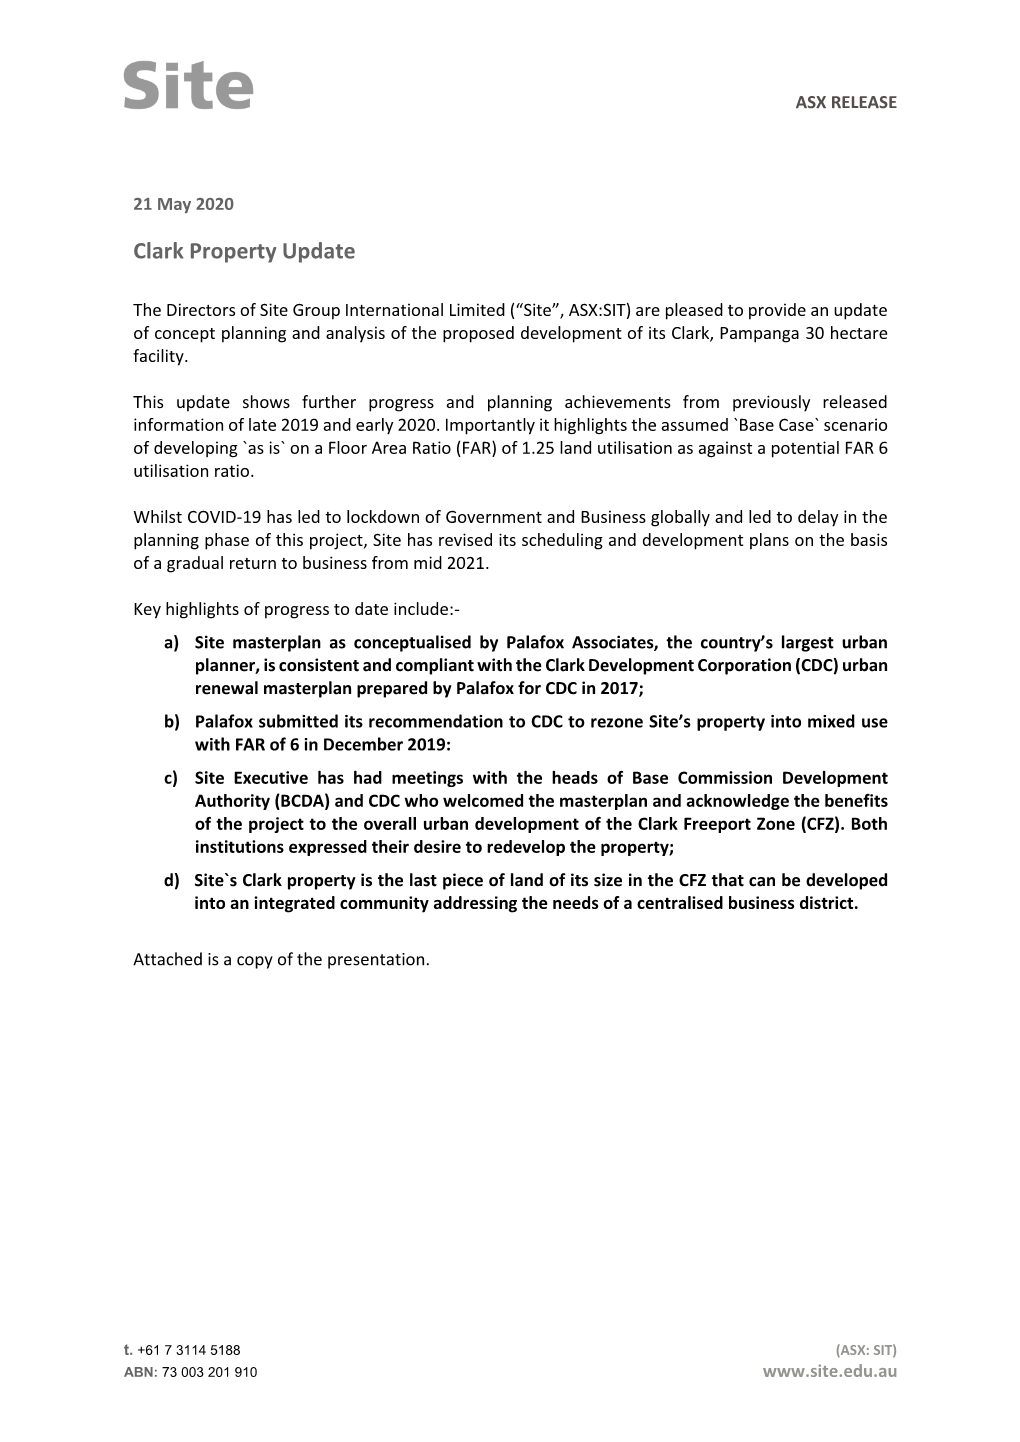 Clark Property Update